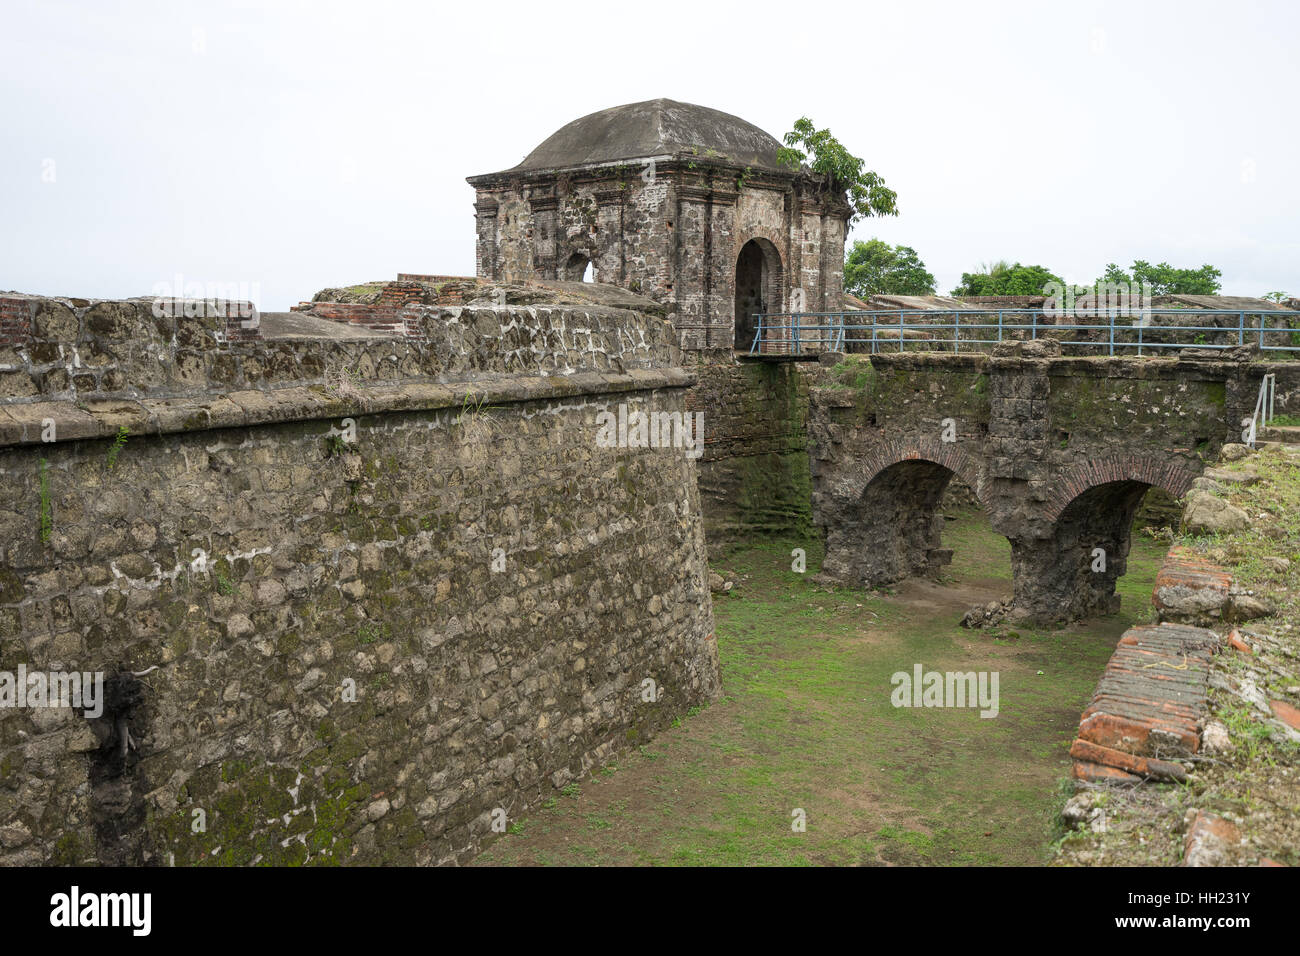 Giugno 10, 2016 Colon, Panama: il fossato presso l'entrata alle rovine della fortezza di San Lorenzo un sito del Patrimonio mondiale Foto Stock